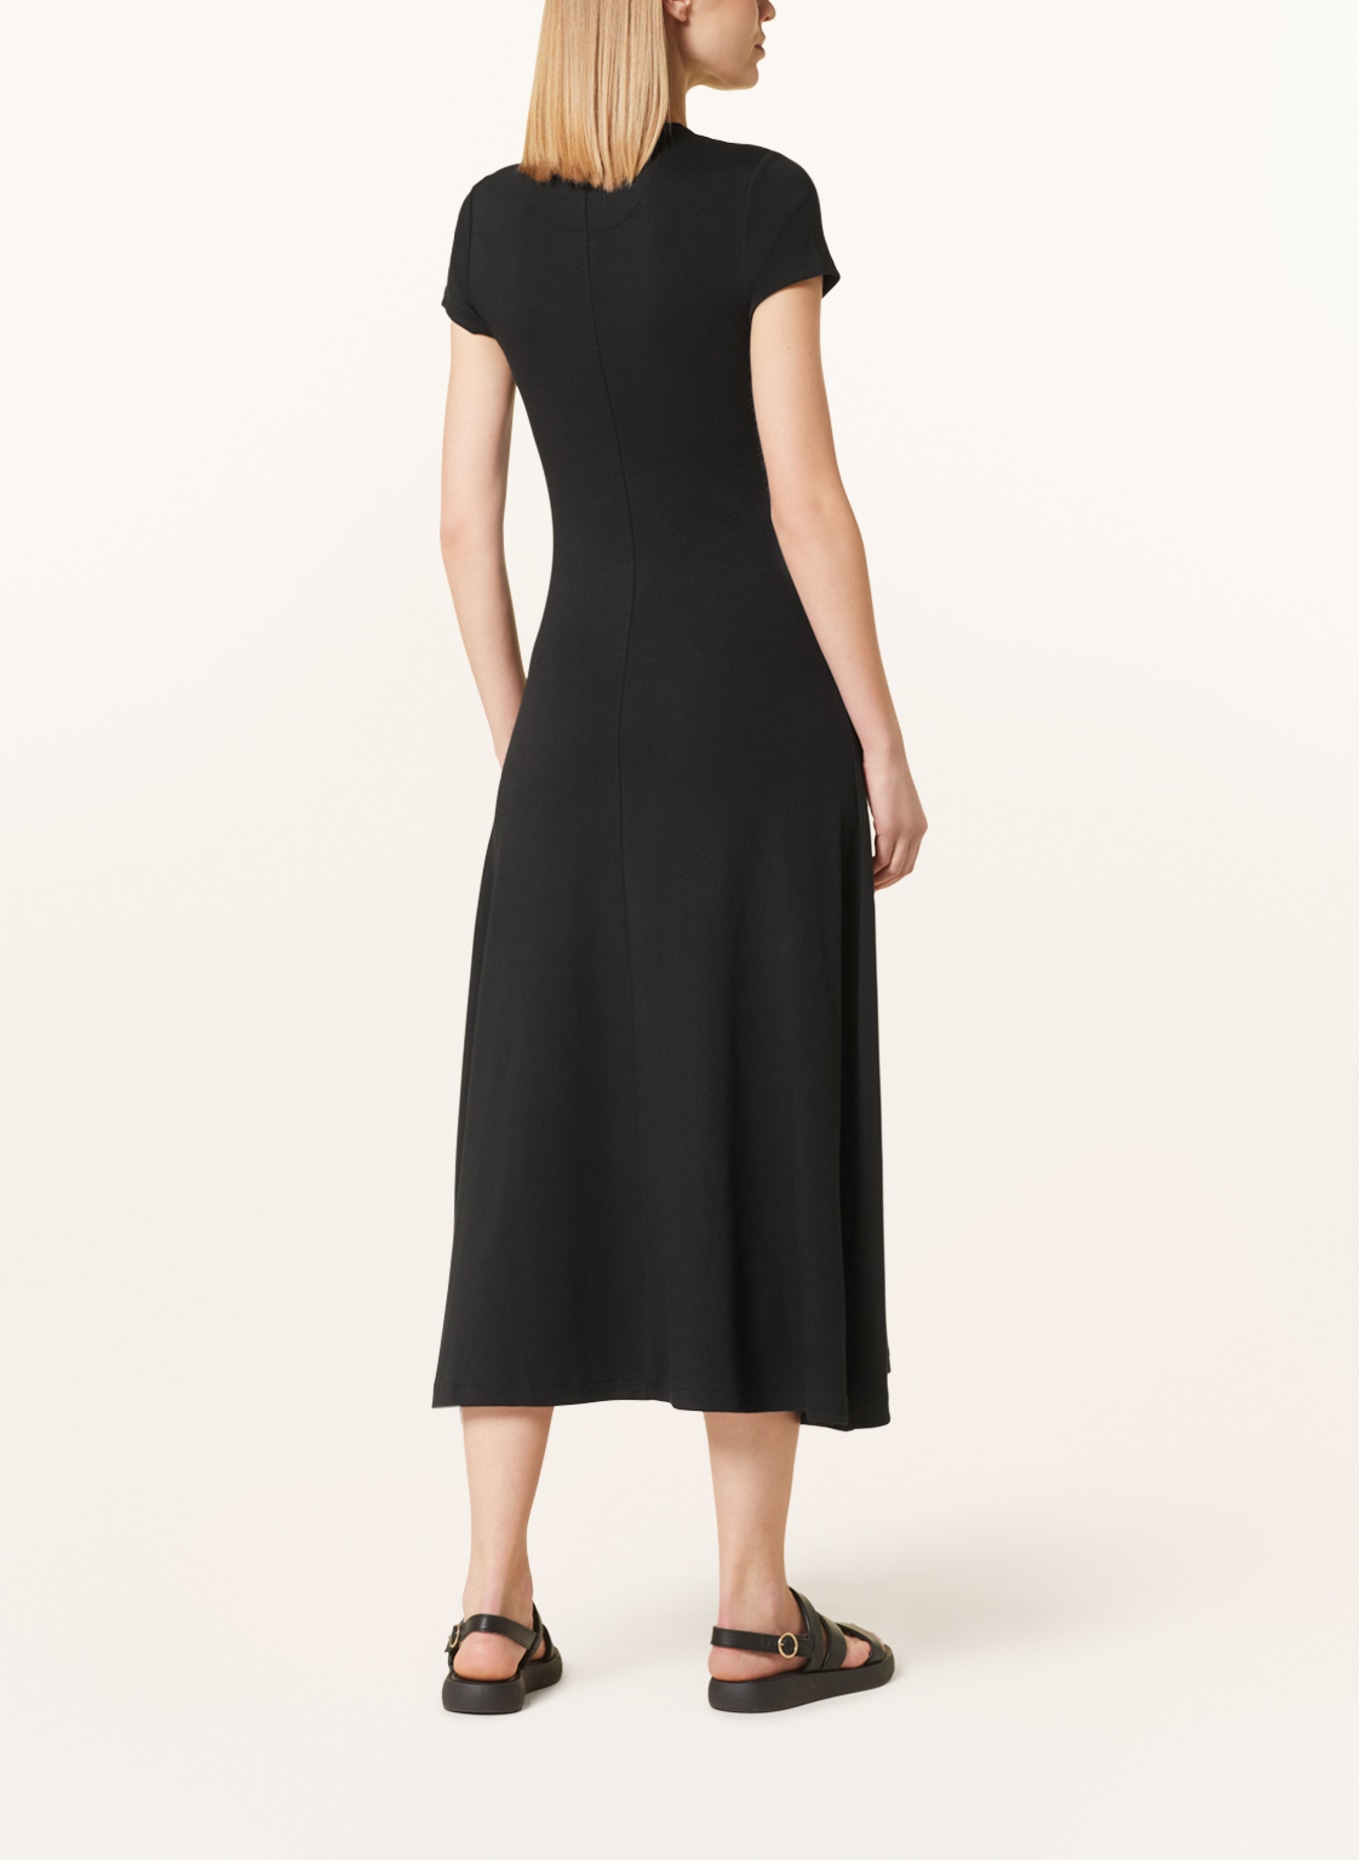 POLO RALPH LAUREN Jersey dress, Color: BLACK (Image 3)